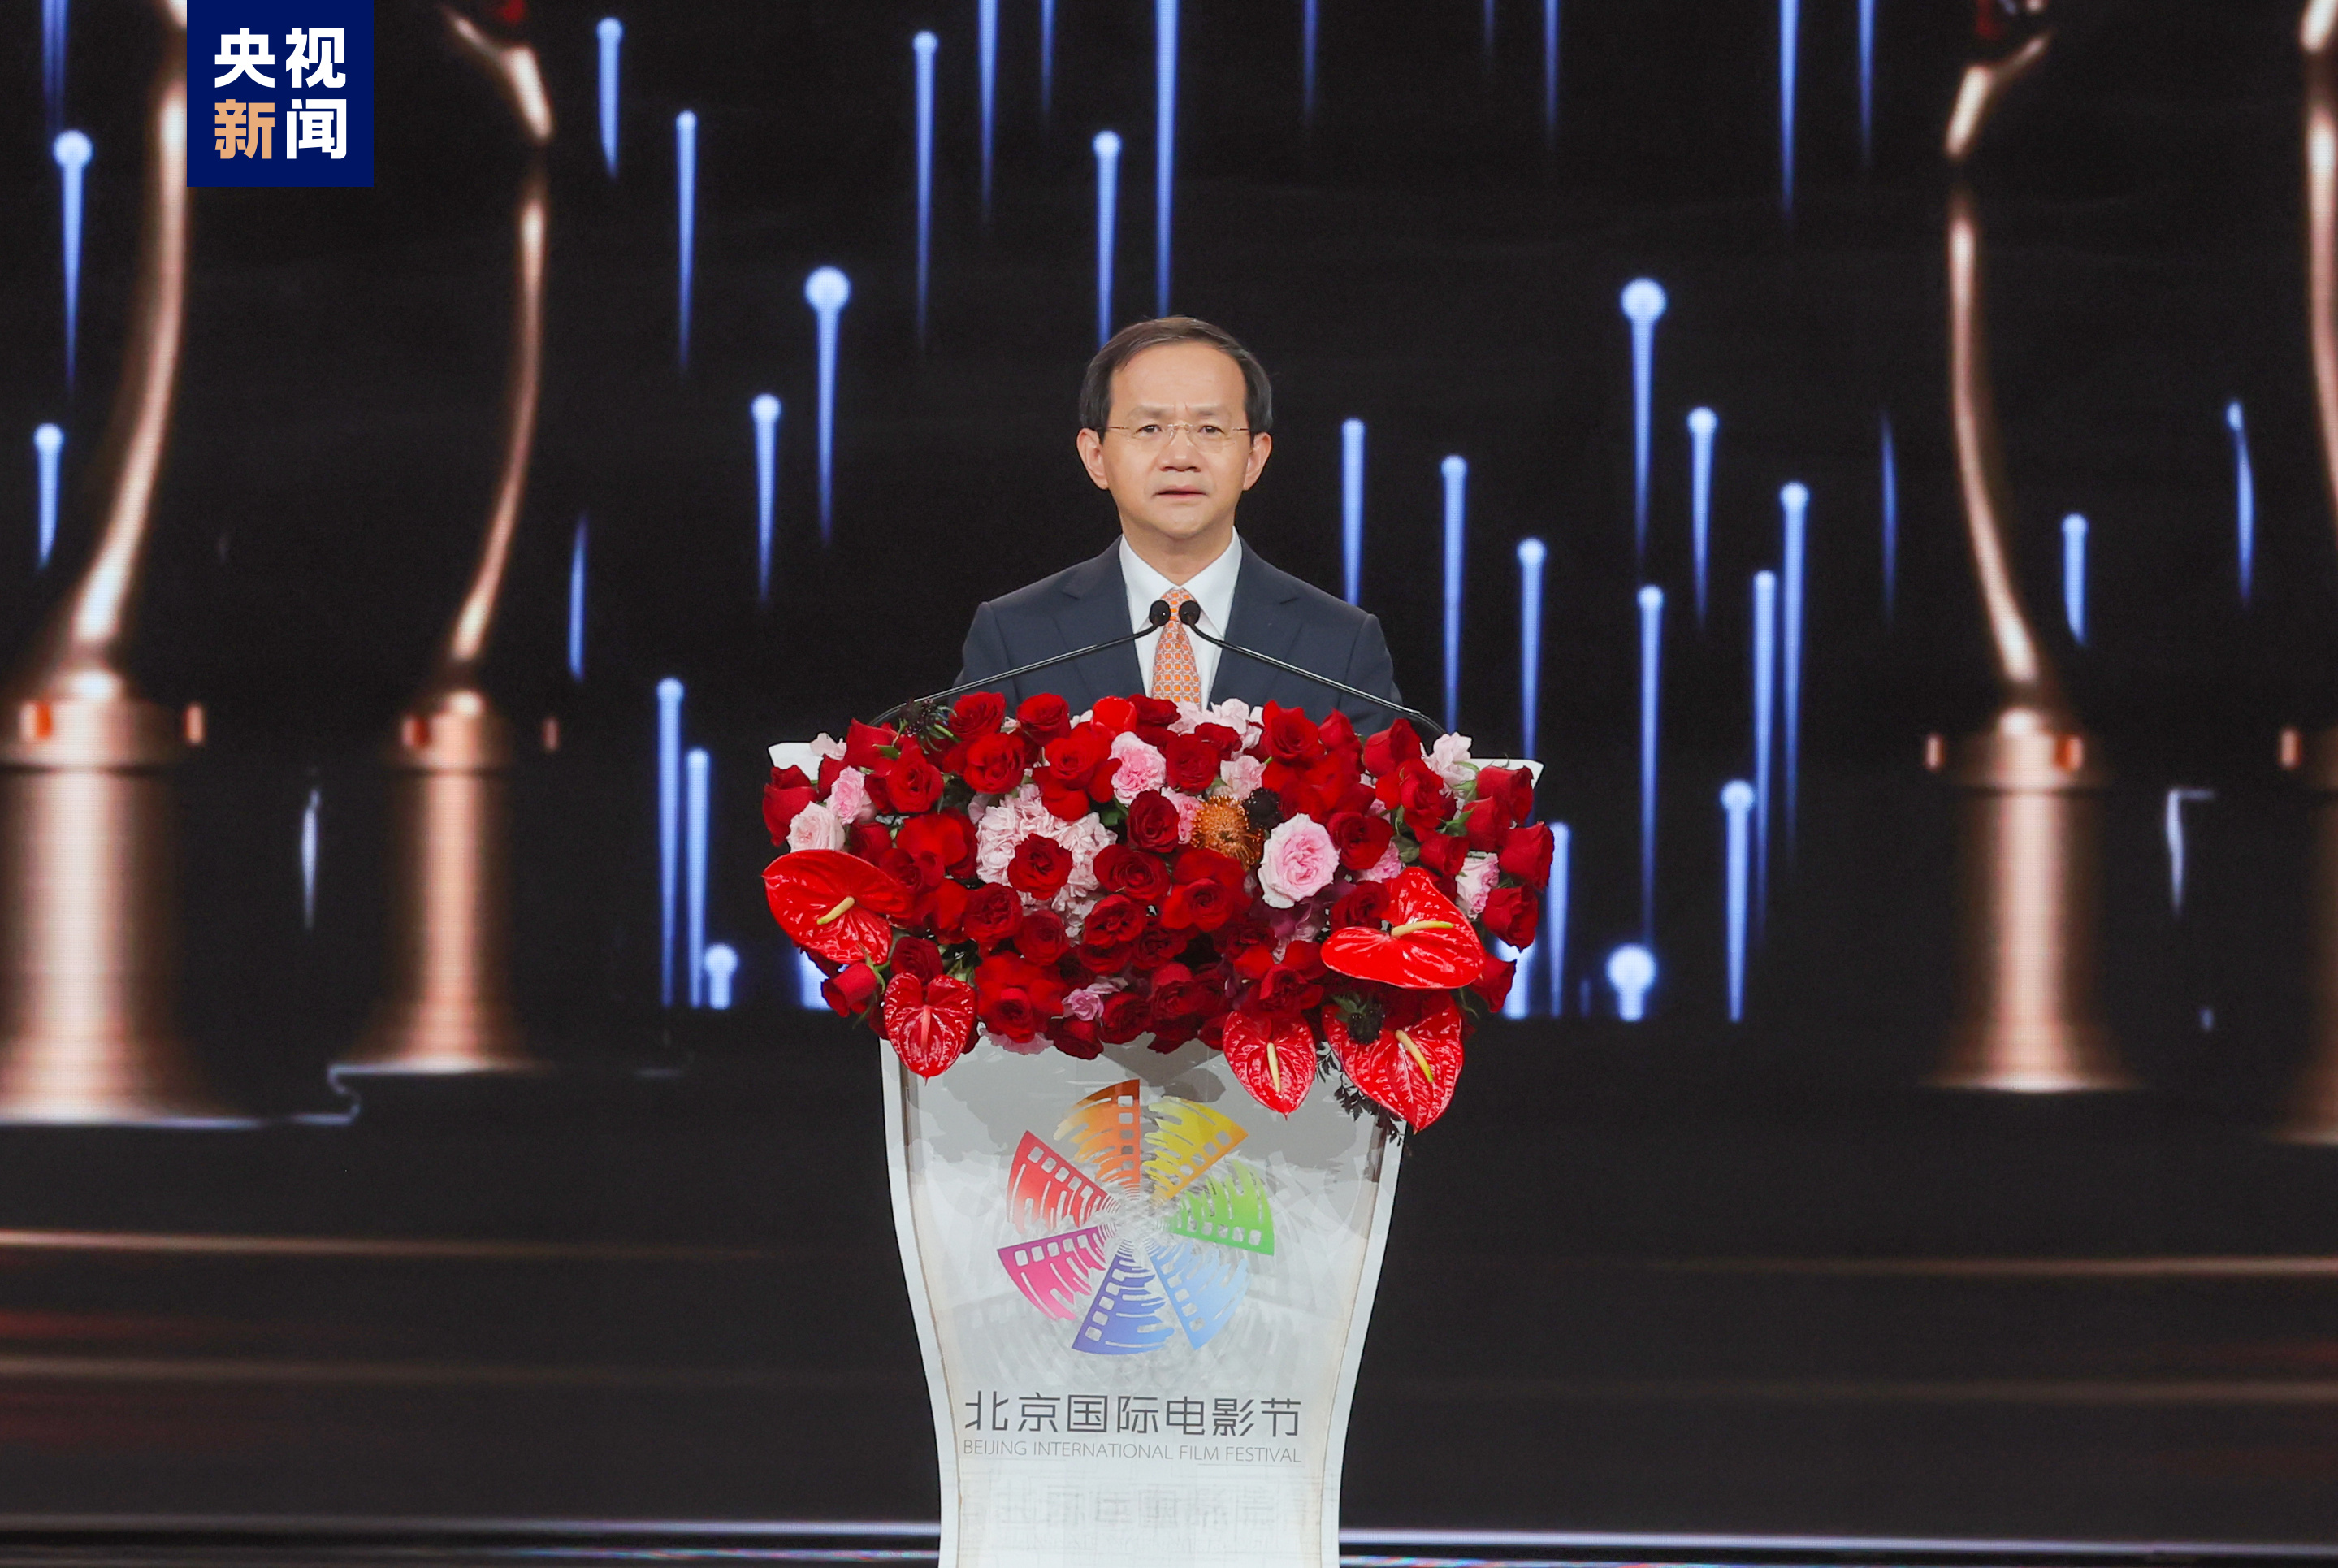 北京市委副书记、市长、第十四届北京国际电影节组委会主席殷勇致辞